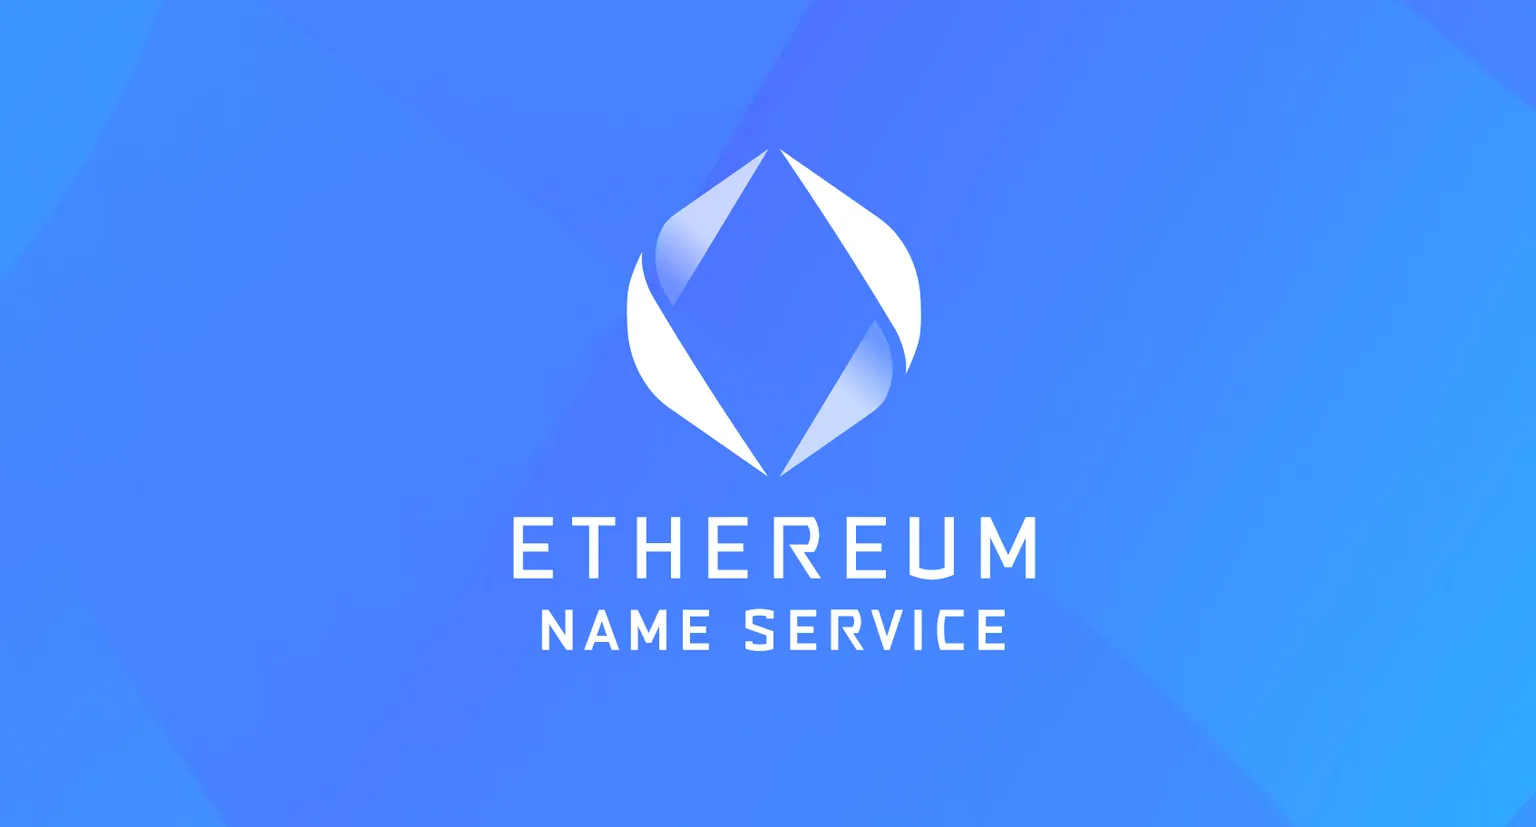 Icono del Servicio de Nombres Ethereum sobre fondo azul